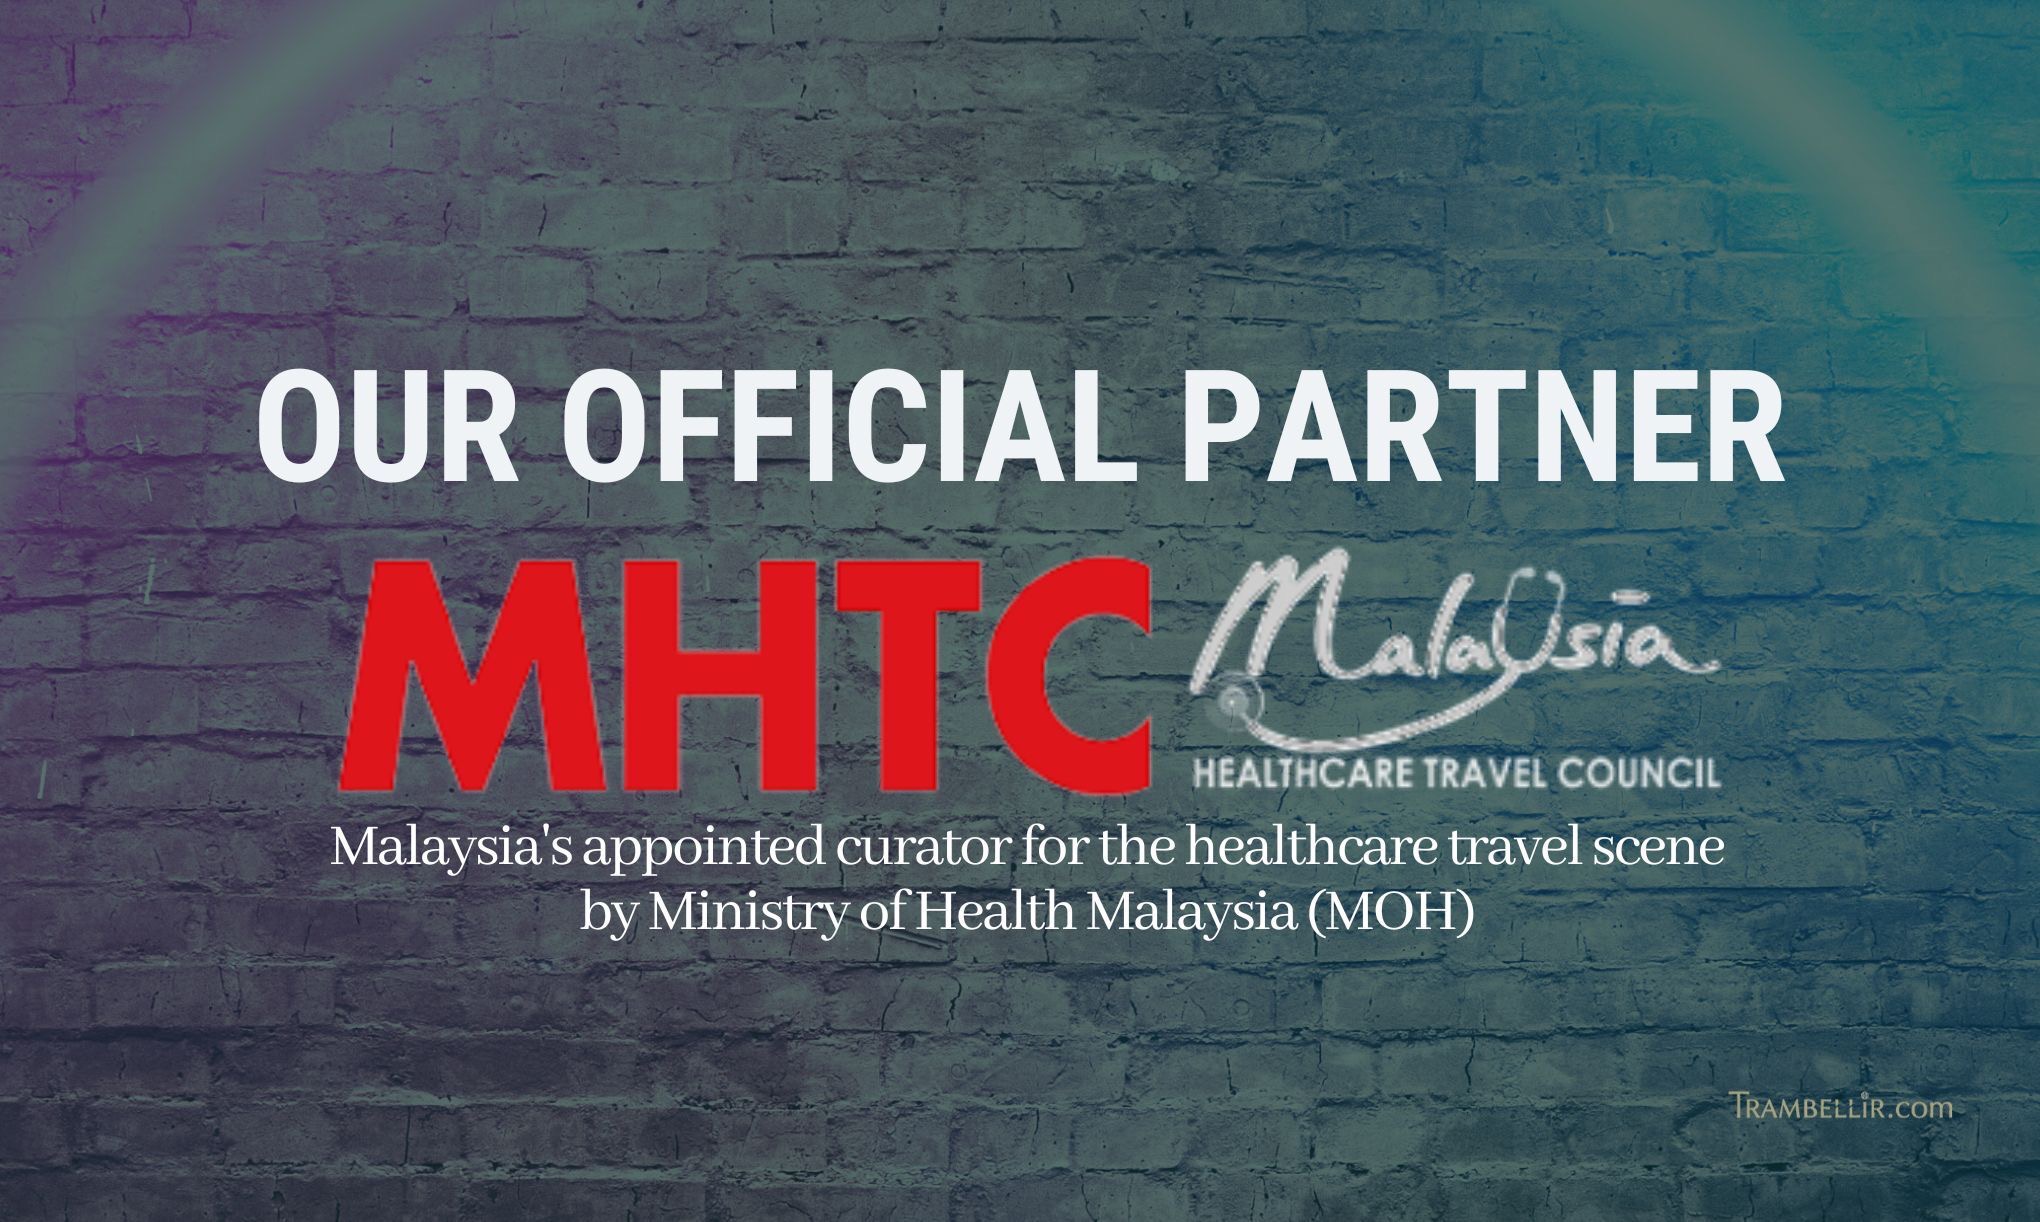 MHTC Malaysia